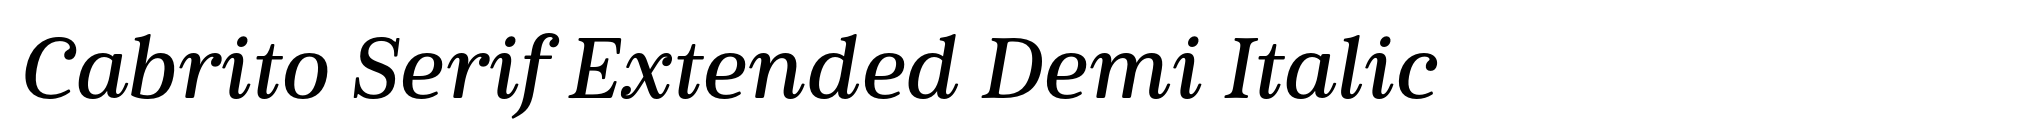 Cabrito Serif Extended Demi Italic image